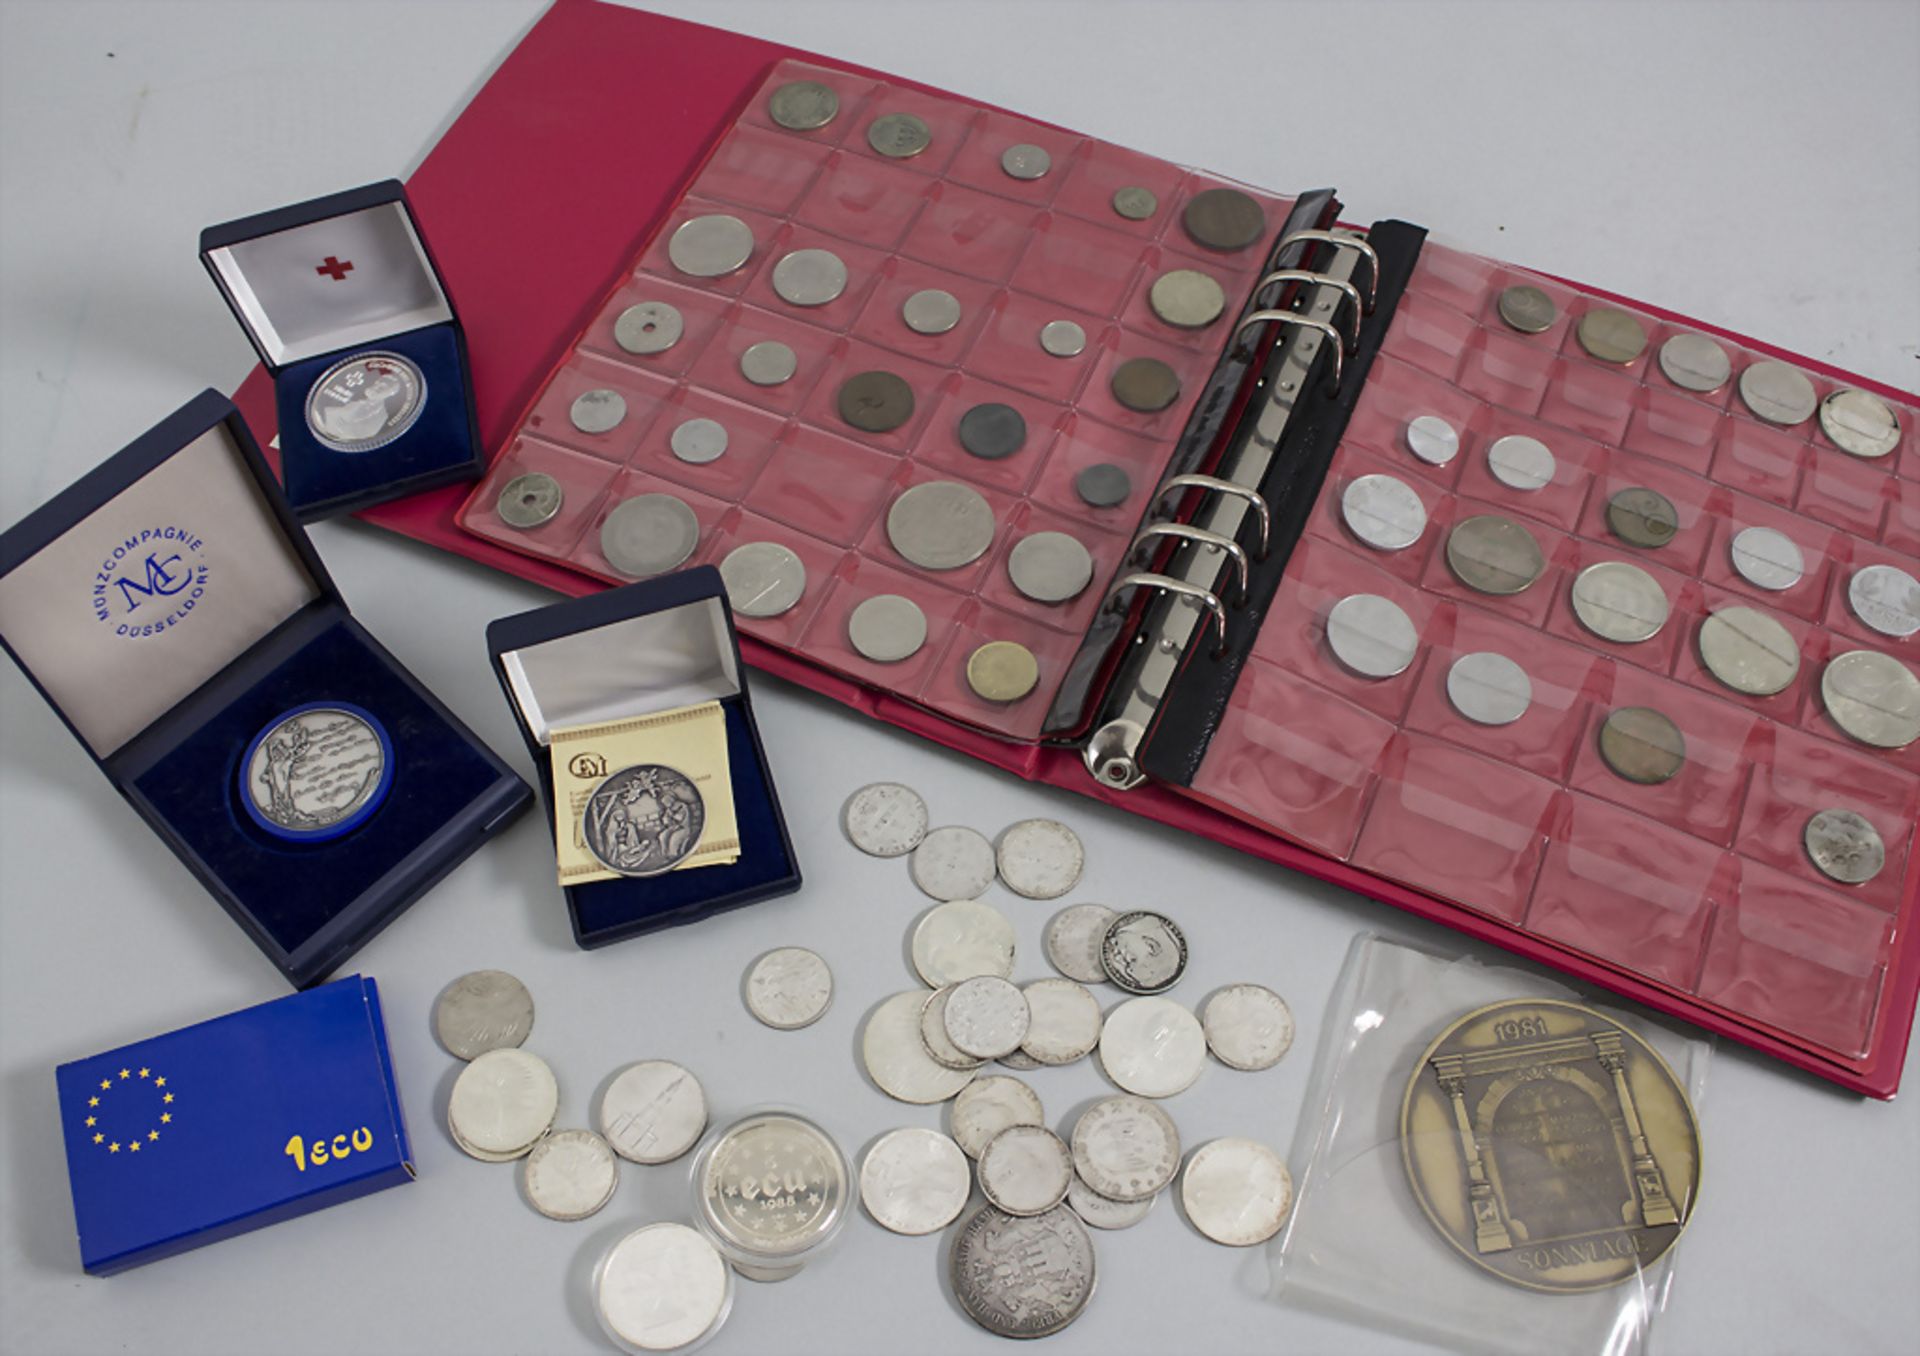 Sammlung Münzen und Medaillen / A collection of coins and medals